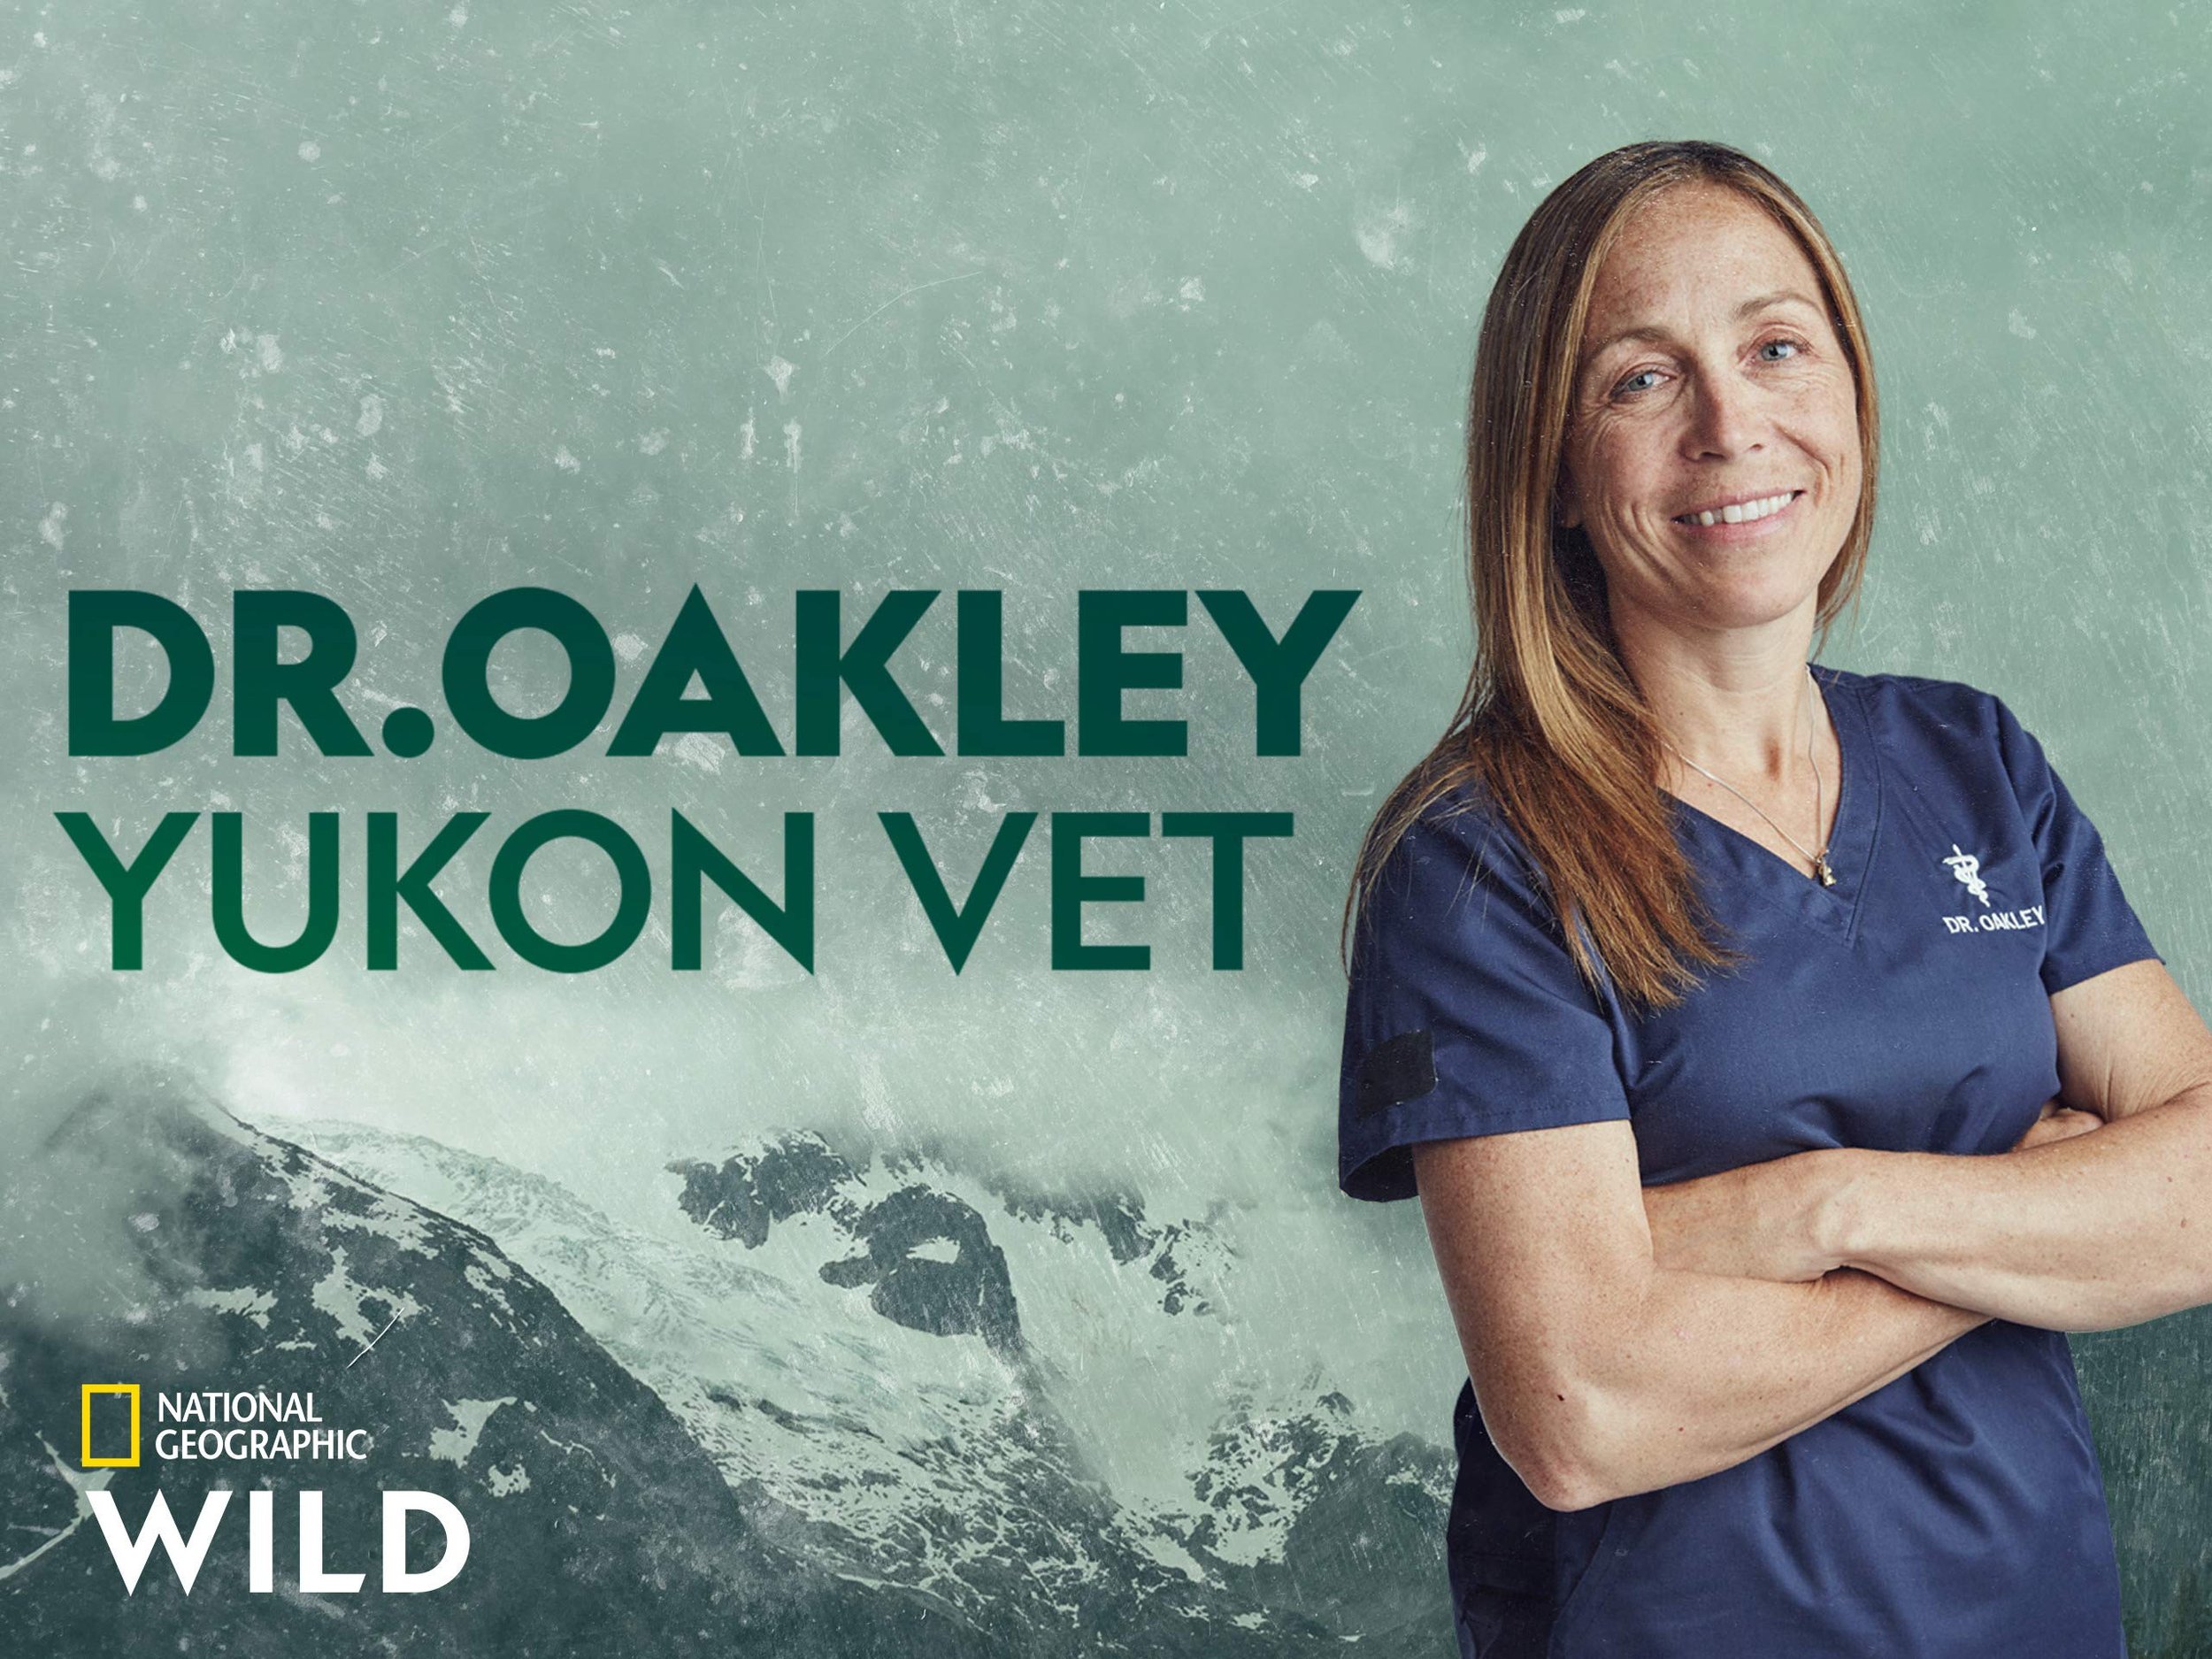 Dr. Oakley Yukon Vet.jpg